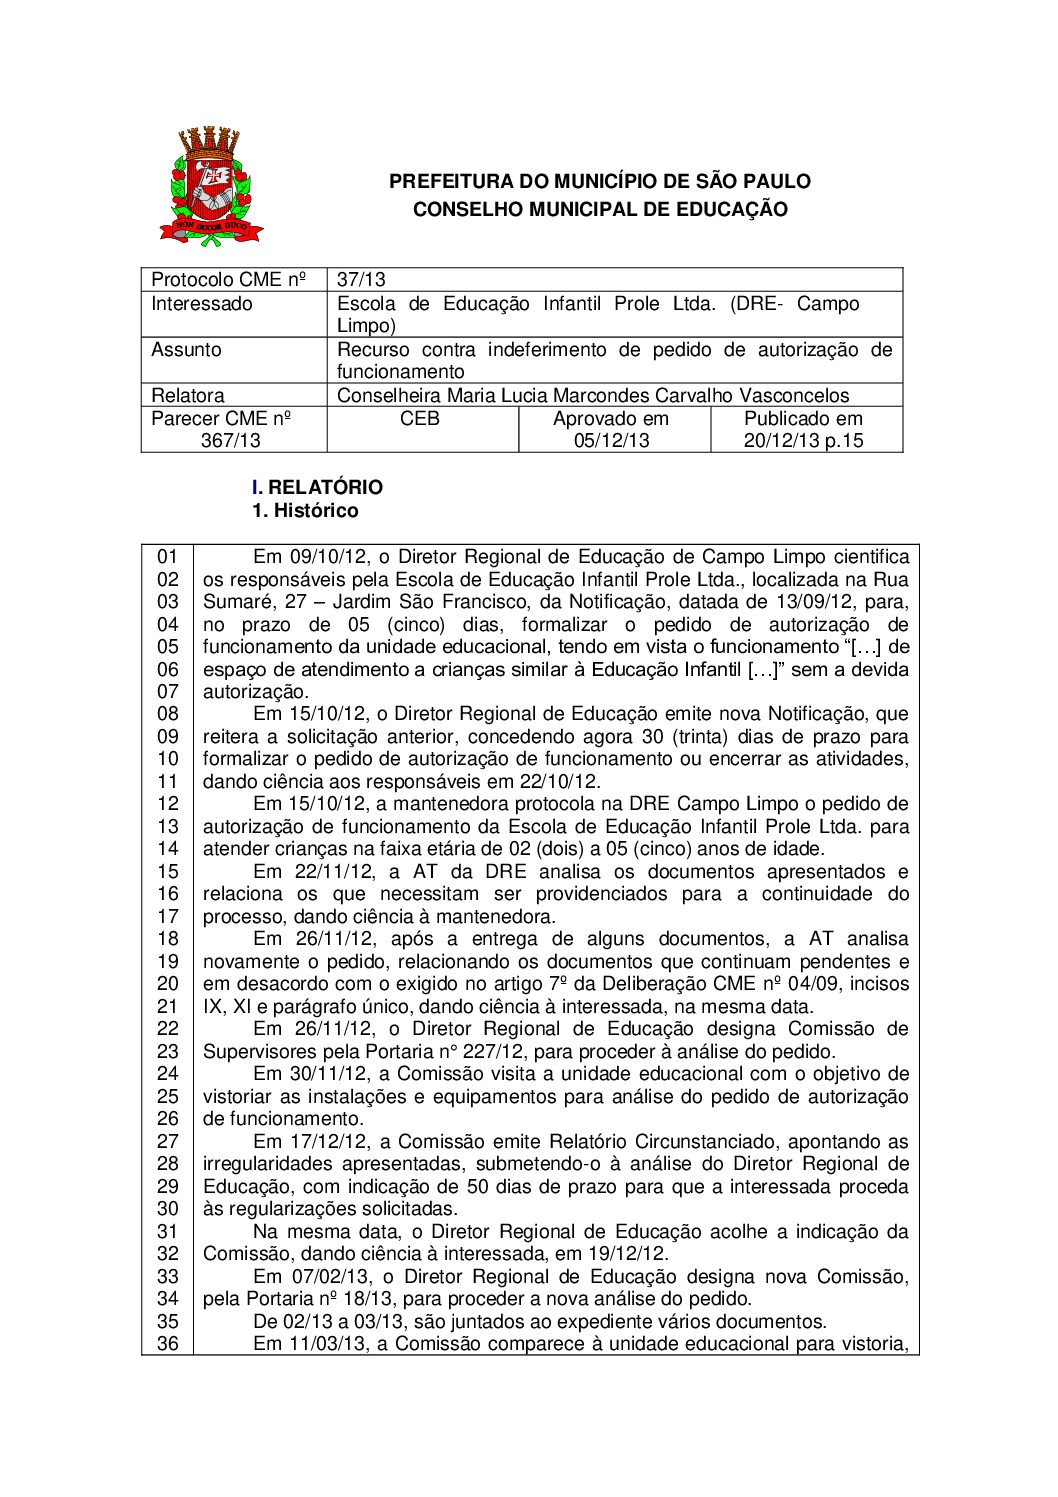 Parecer CME nº 367/2013 - Escola de Educação Infantil Prole Ltda (DRE Campo Limpo) - Recurso contra indeferimento de pedido de autorização de funcionamento 